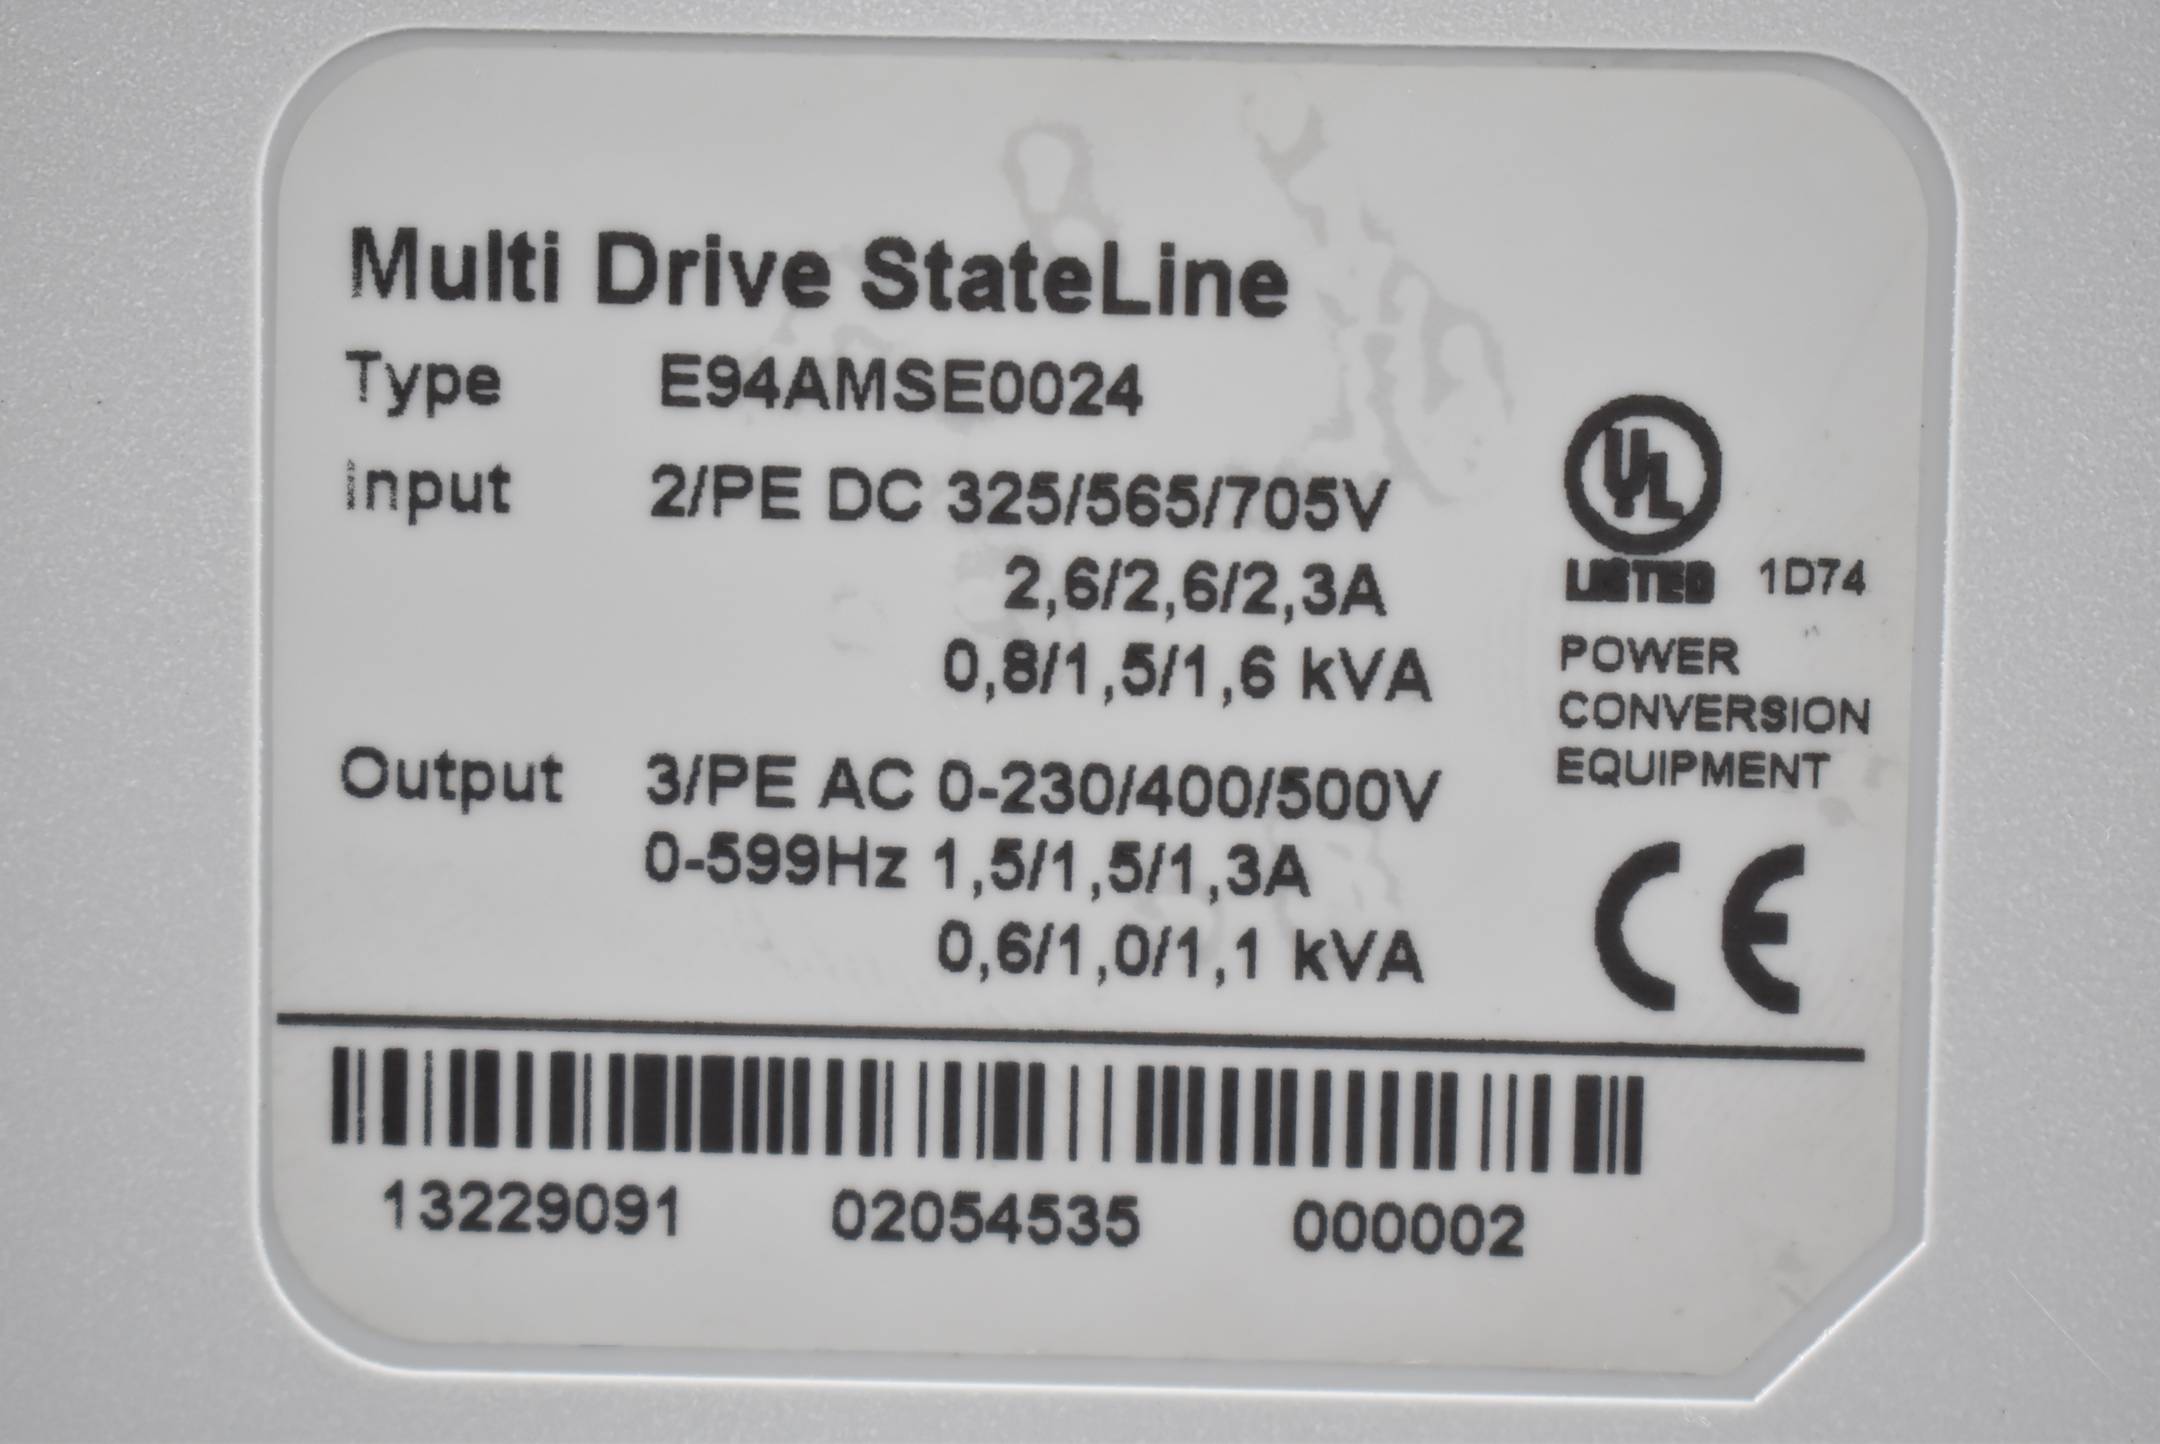 Lenze Multi Drive StateLine E94AMSE0024